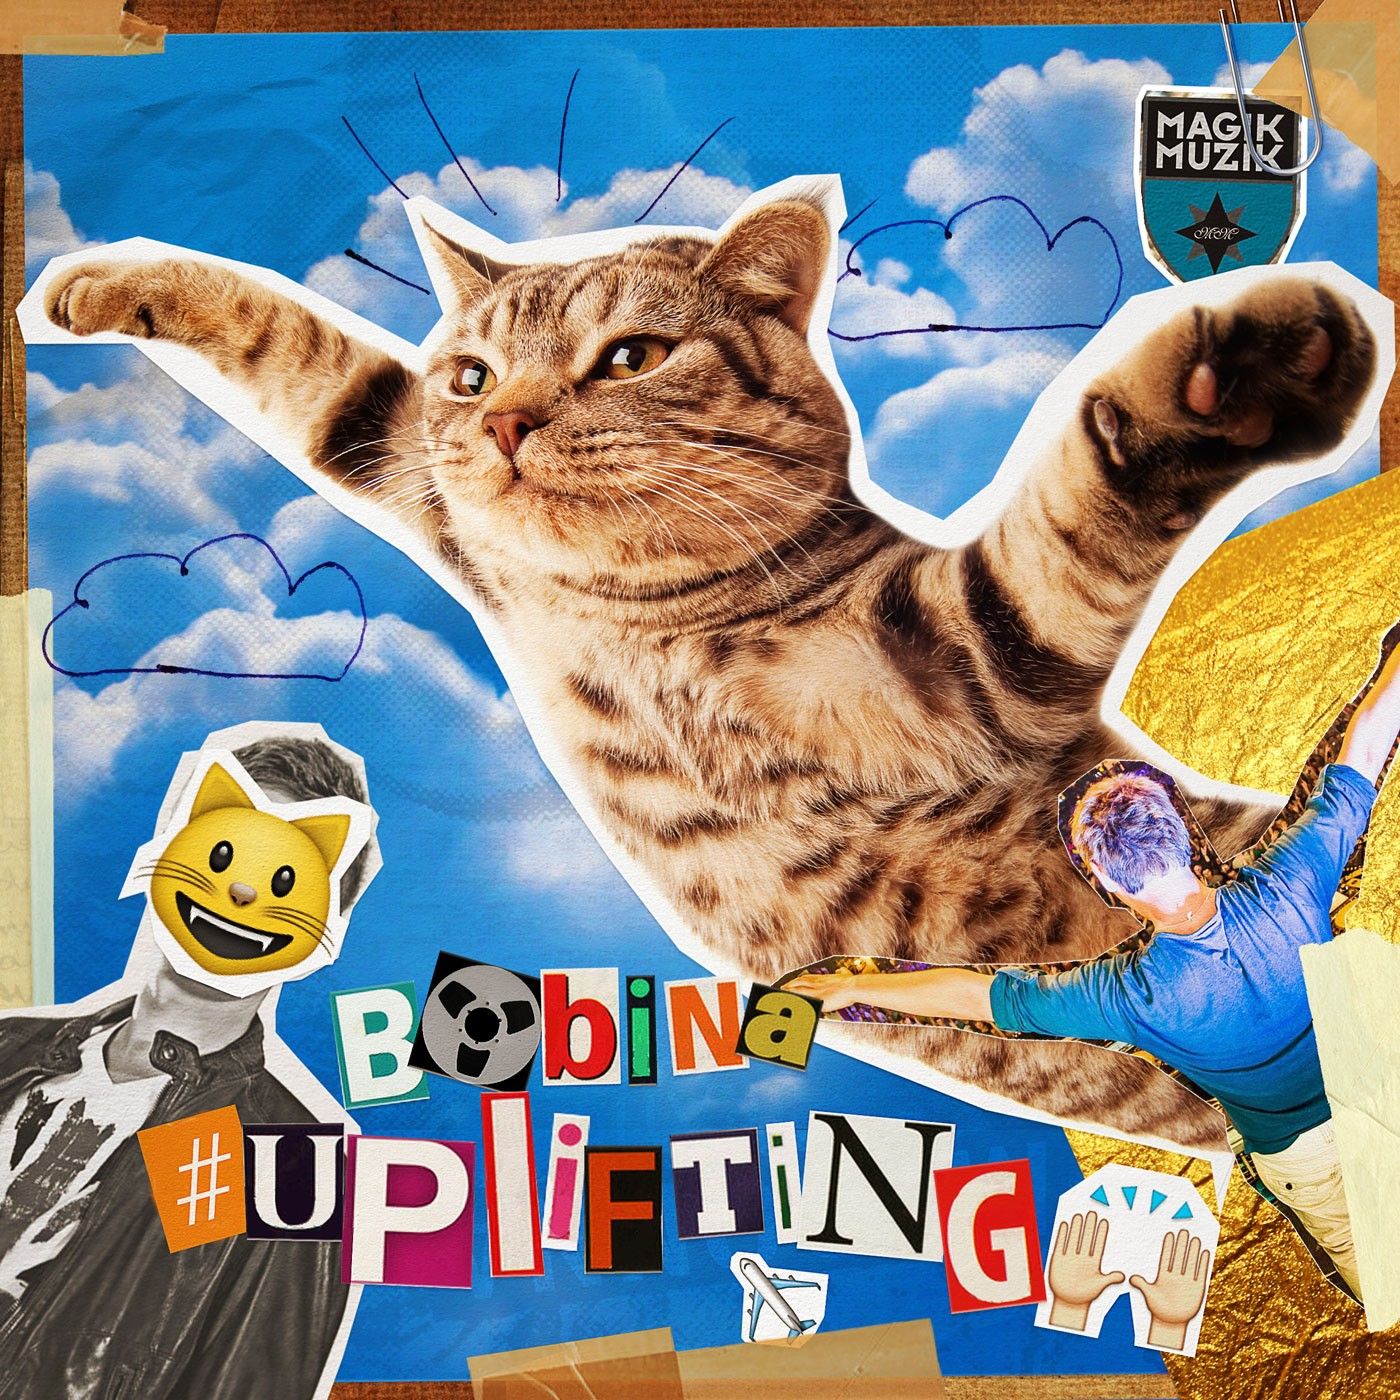 bobina-uplifting-2015-magik-muzik.jpg